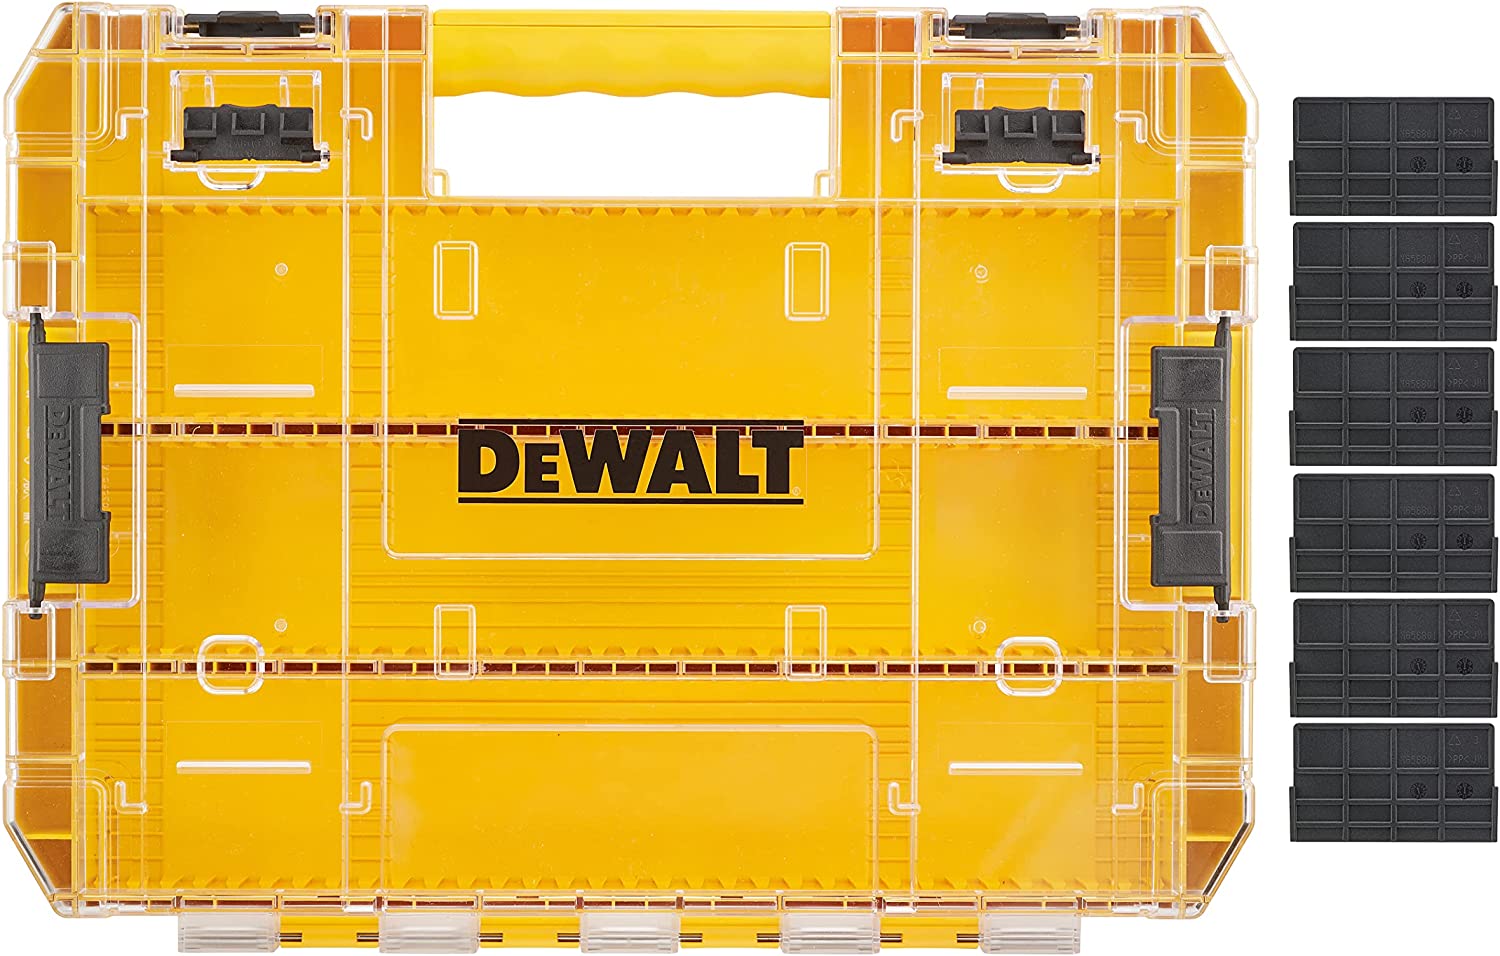 デウォルト(DEWALT) タフケース (大) デバイダー付き 工具箱 収納ケース ツールボックス 小物入れ 透明蓋 DT70839-QZ